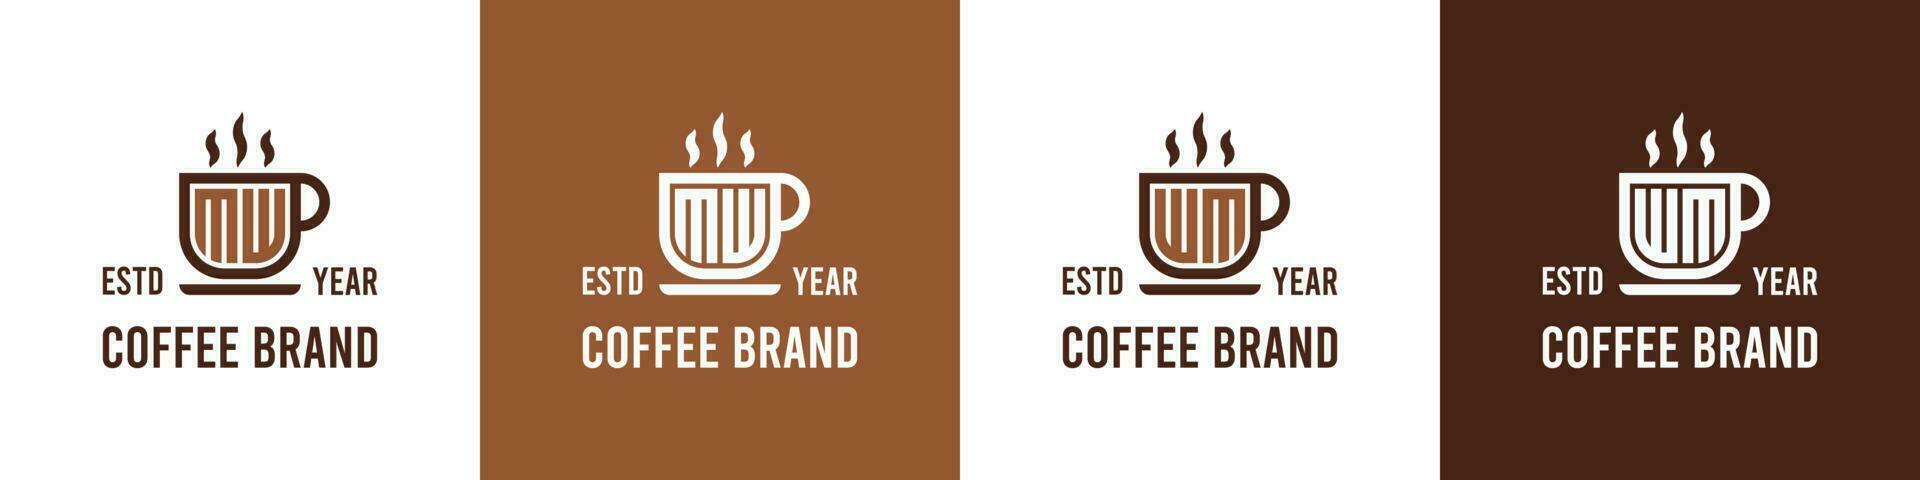 lettera mw e wm caffè logo, adatto per qualunque attività commerciale relazionato per caffè, Tè, o altro con mw o wm iniziali. vettore